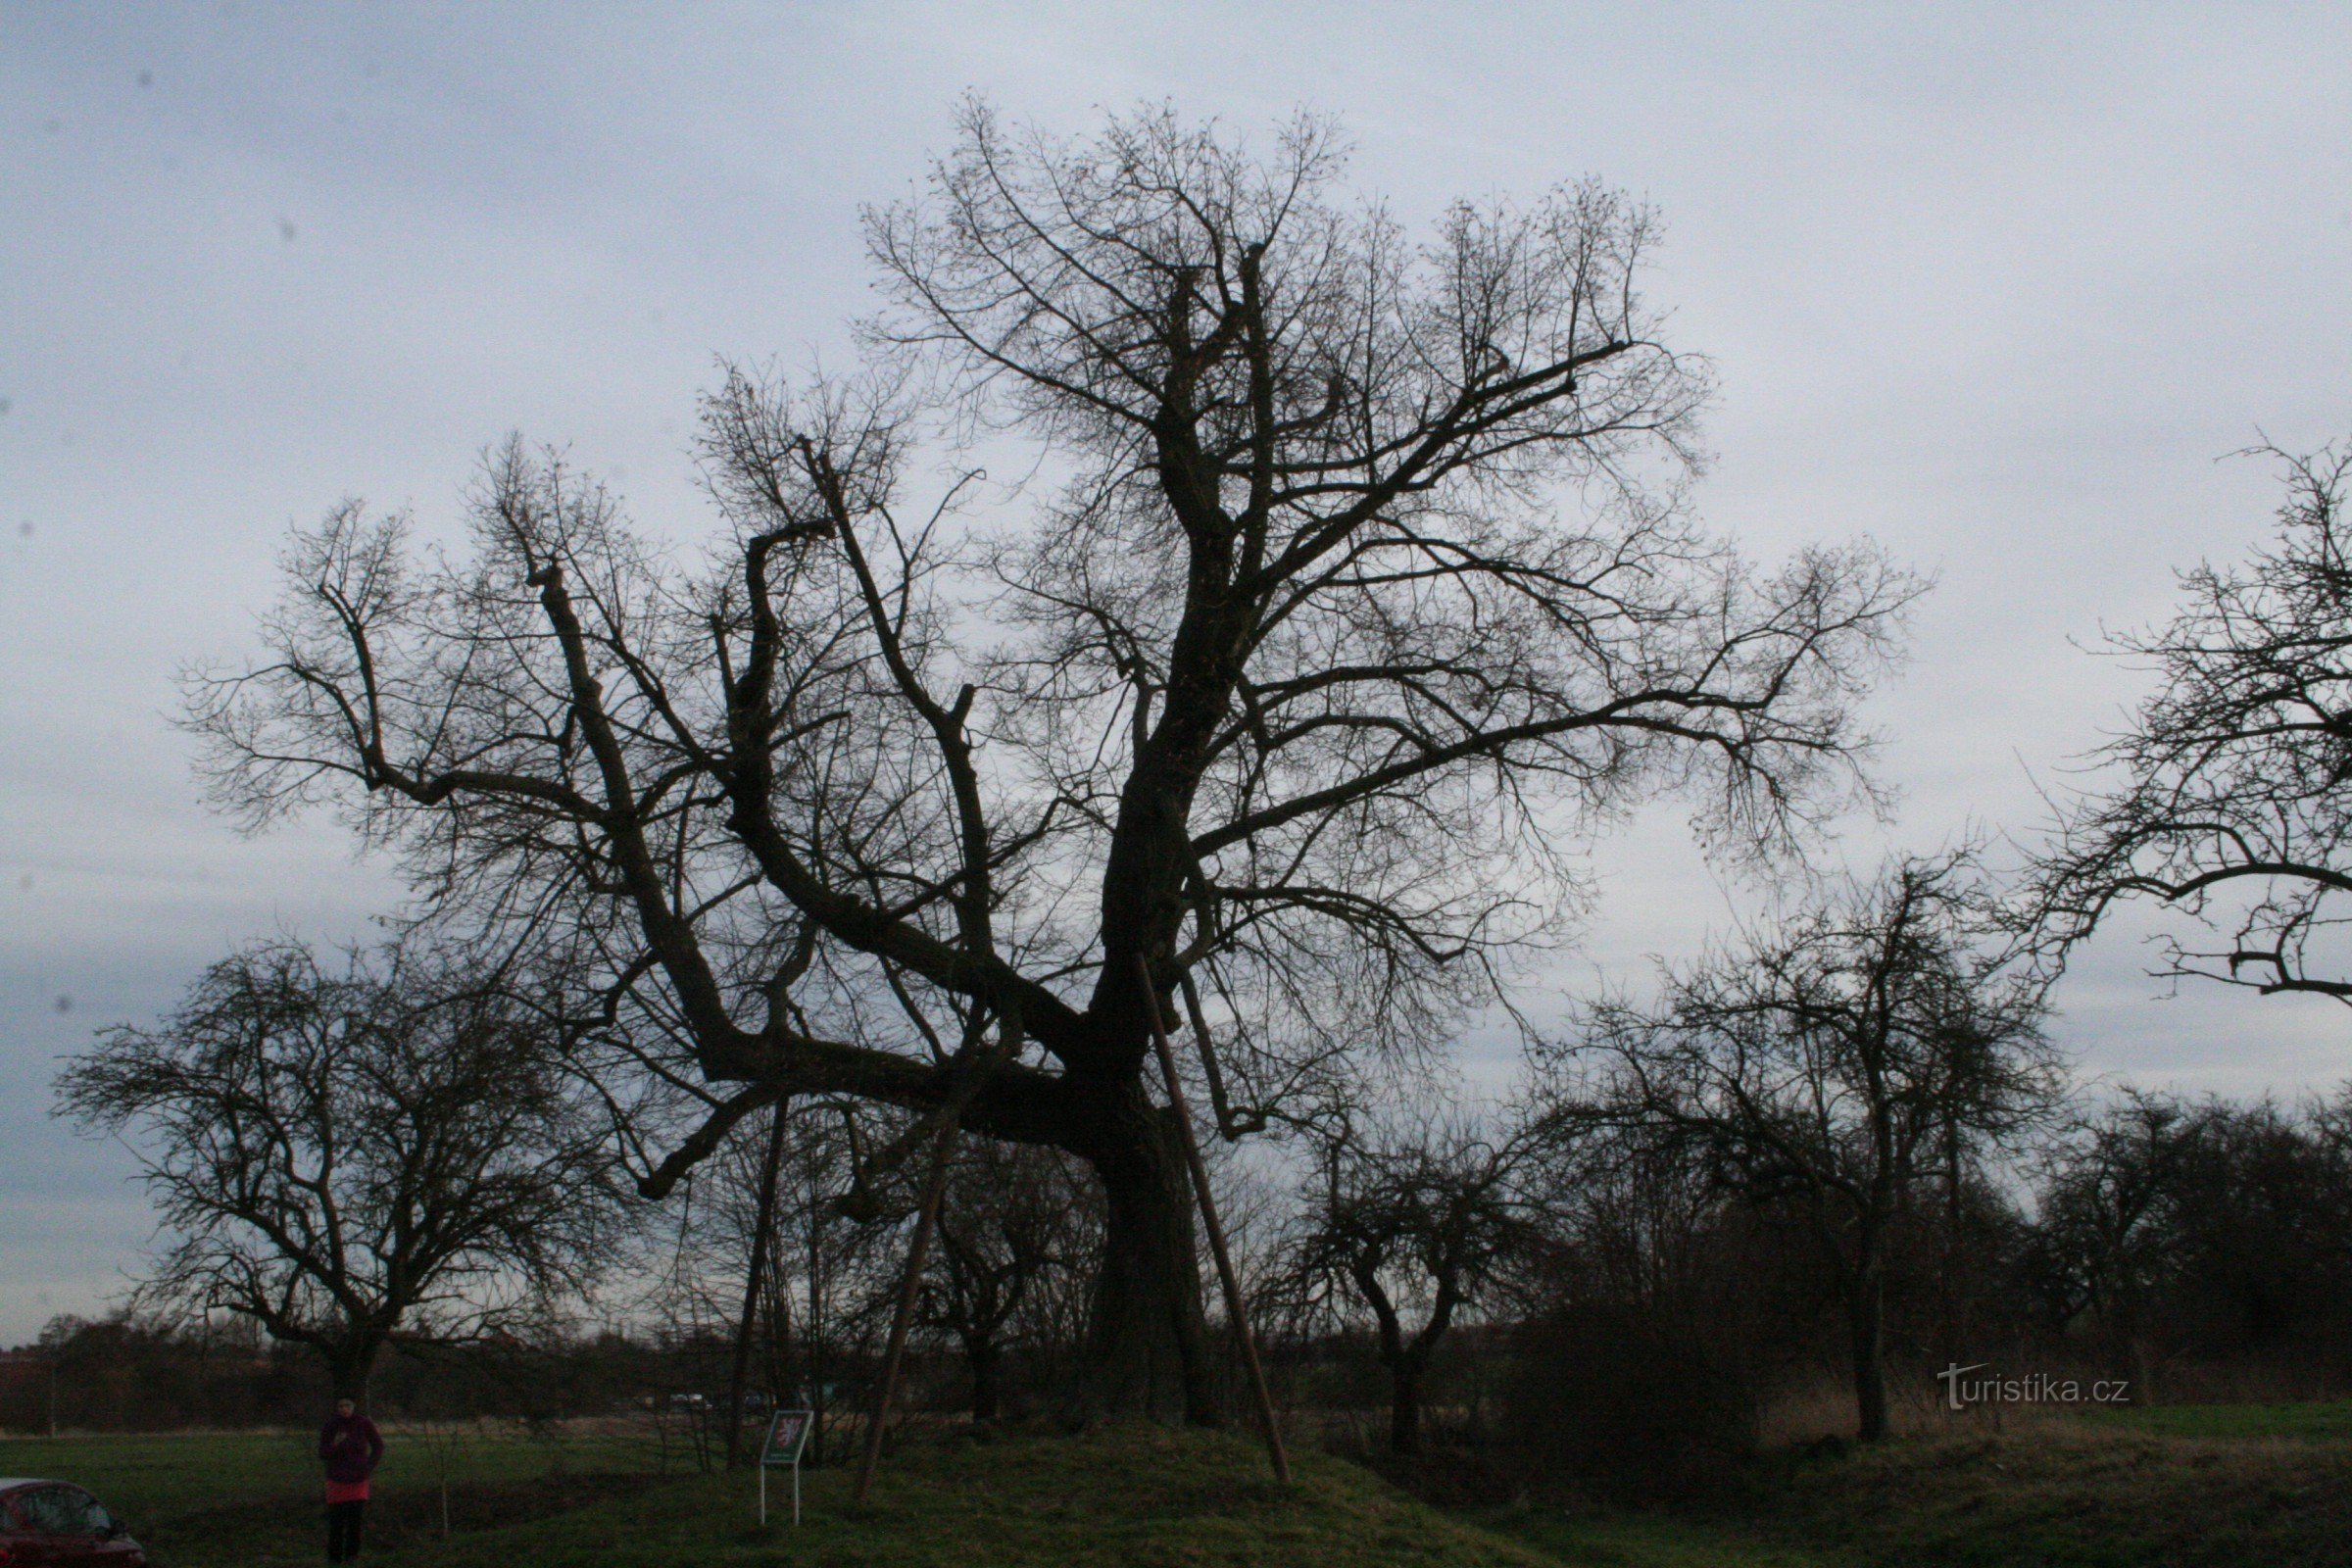 Drahelčice 的纪念椴树